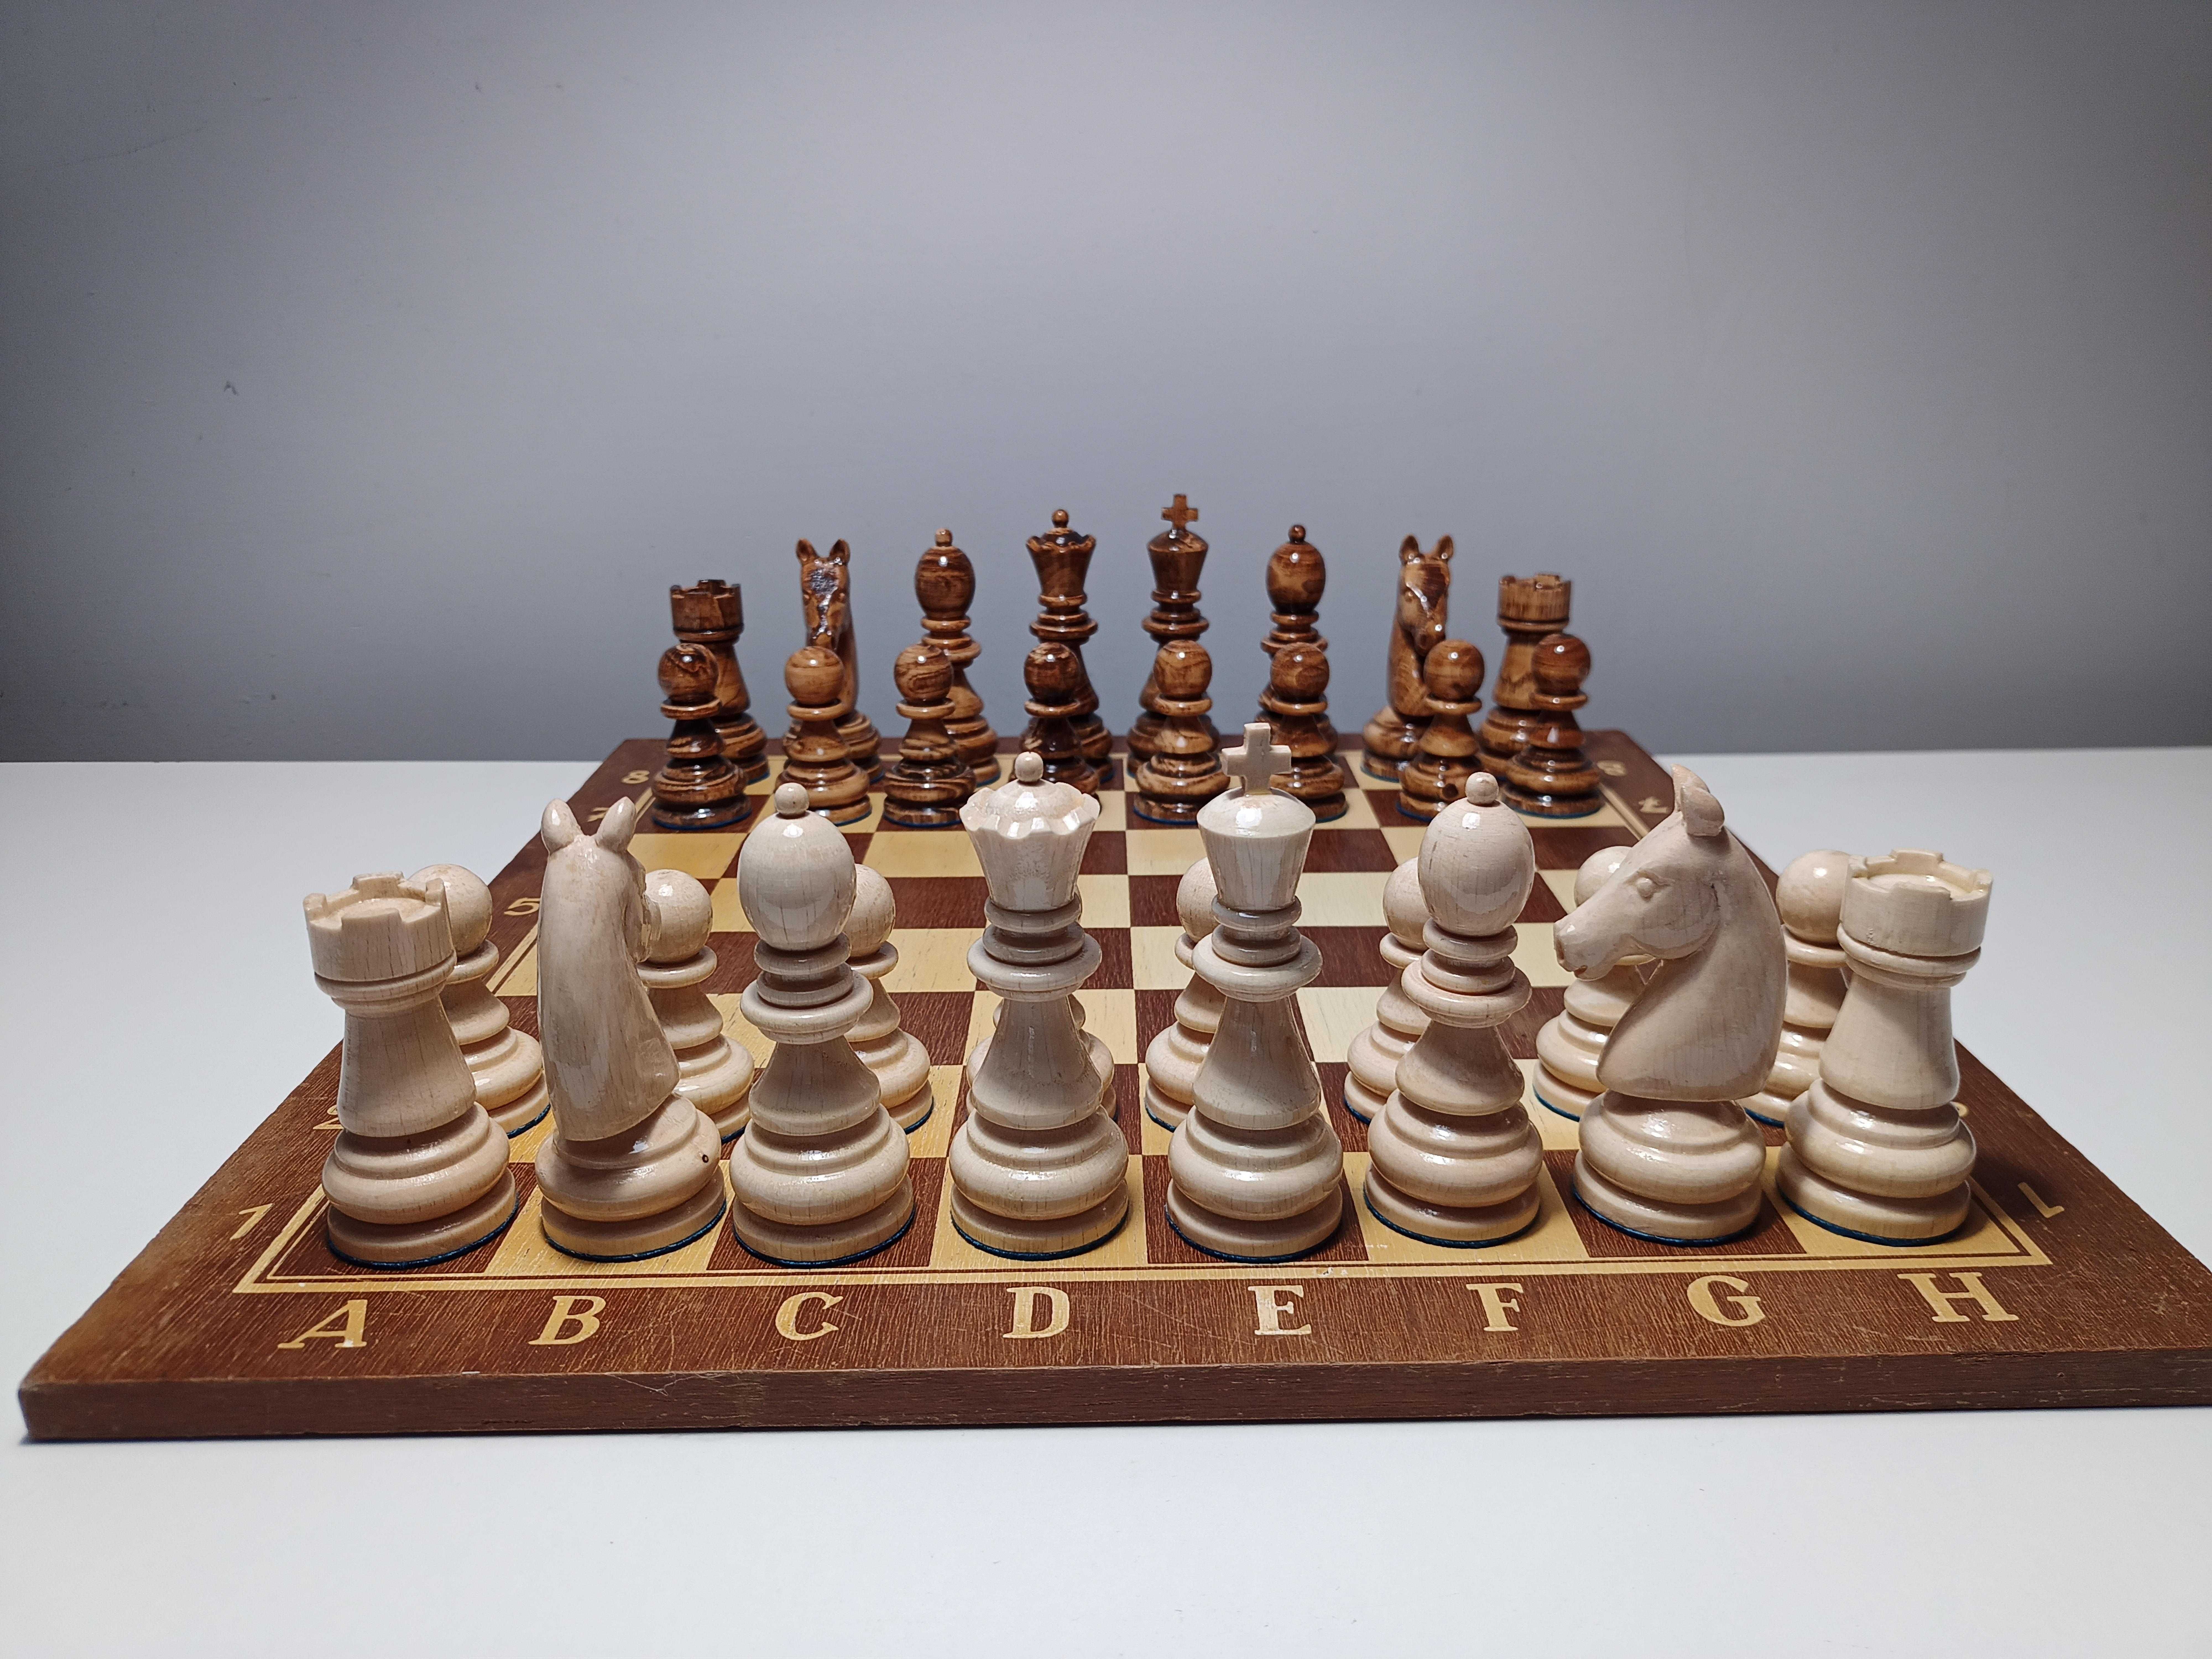 Figury szachowe drewniane BUK szachy